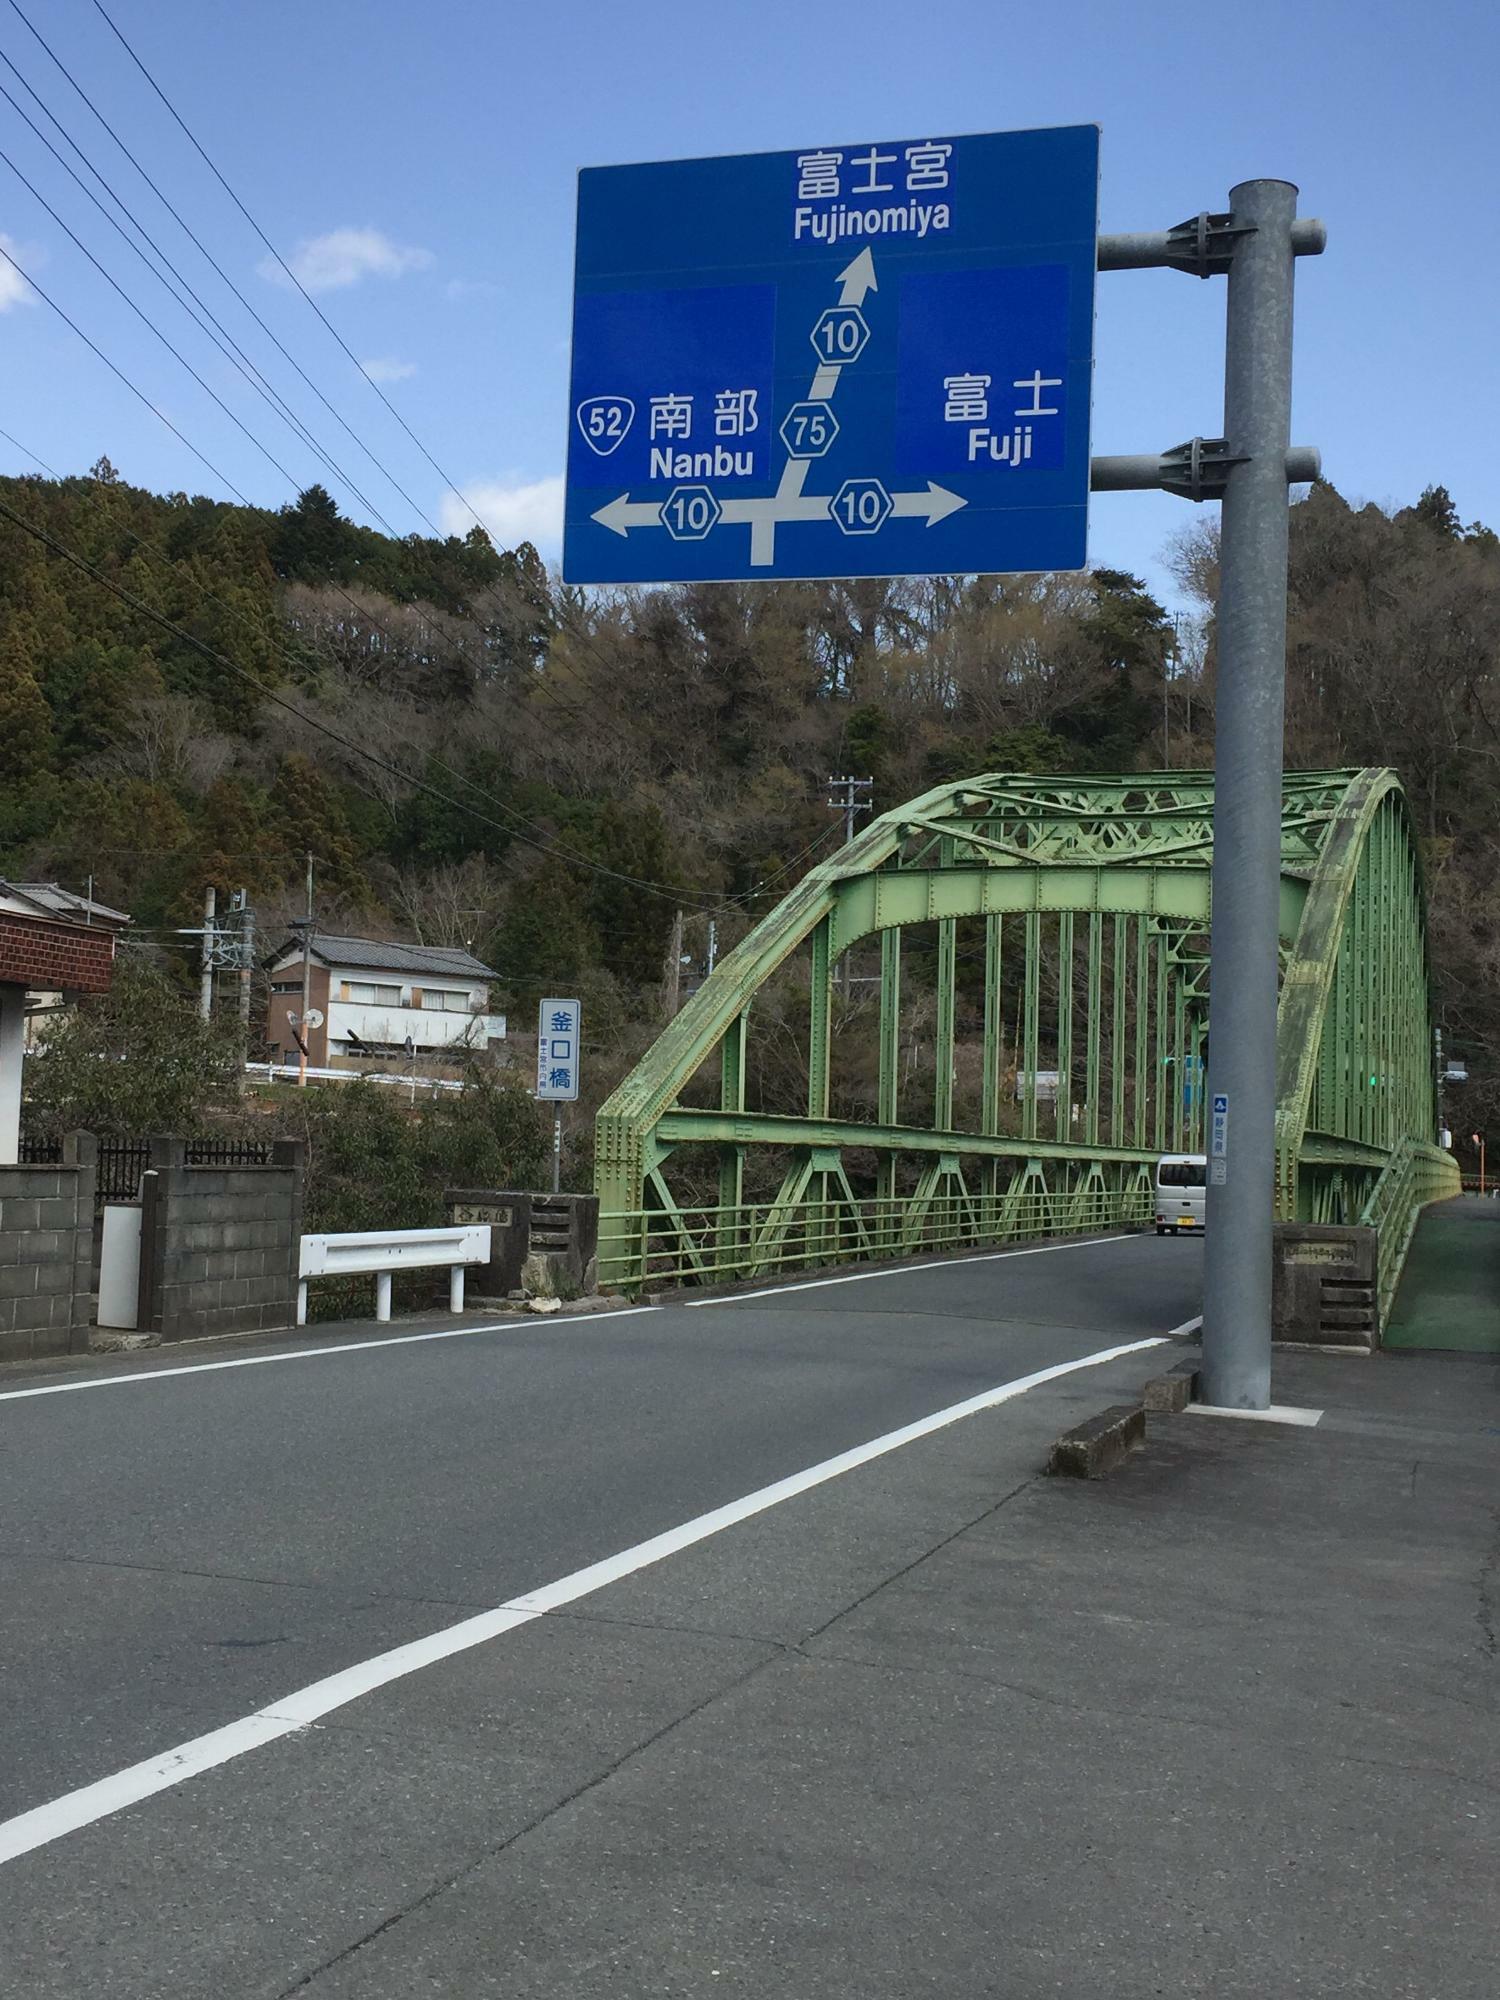 富士川に架かる橋としては最短の橋